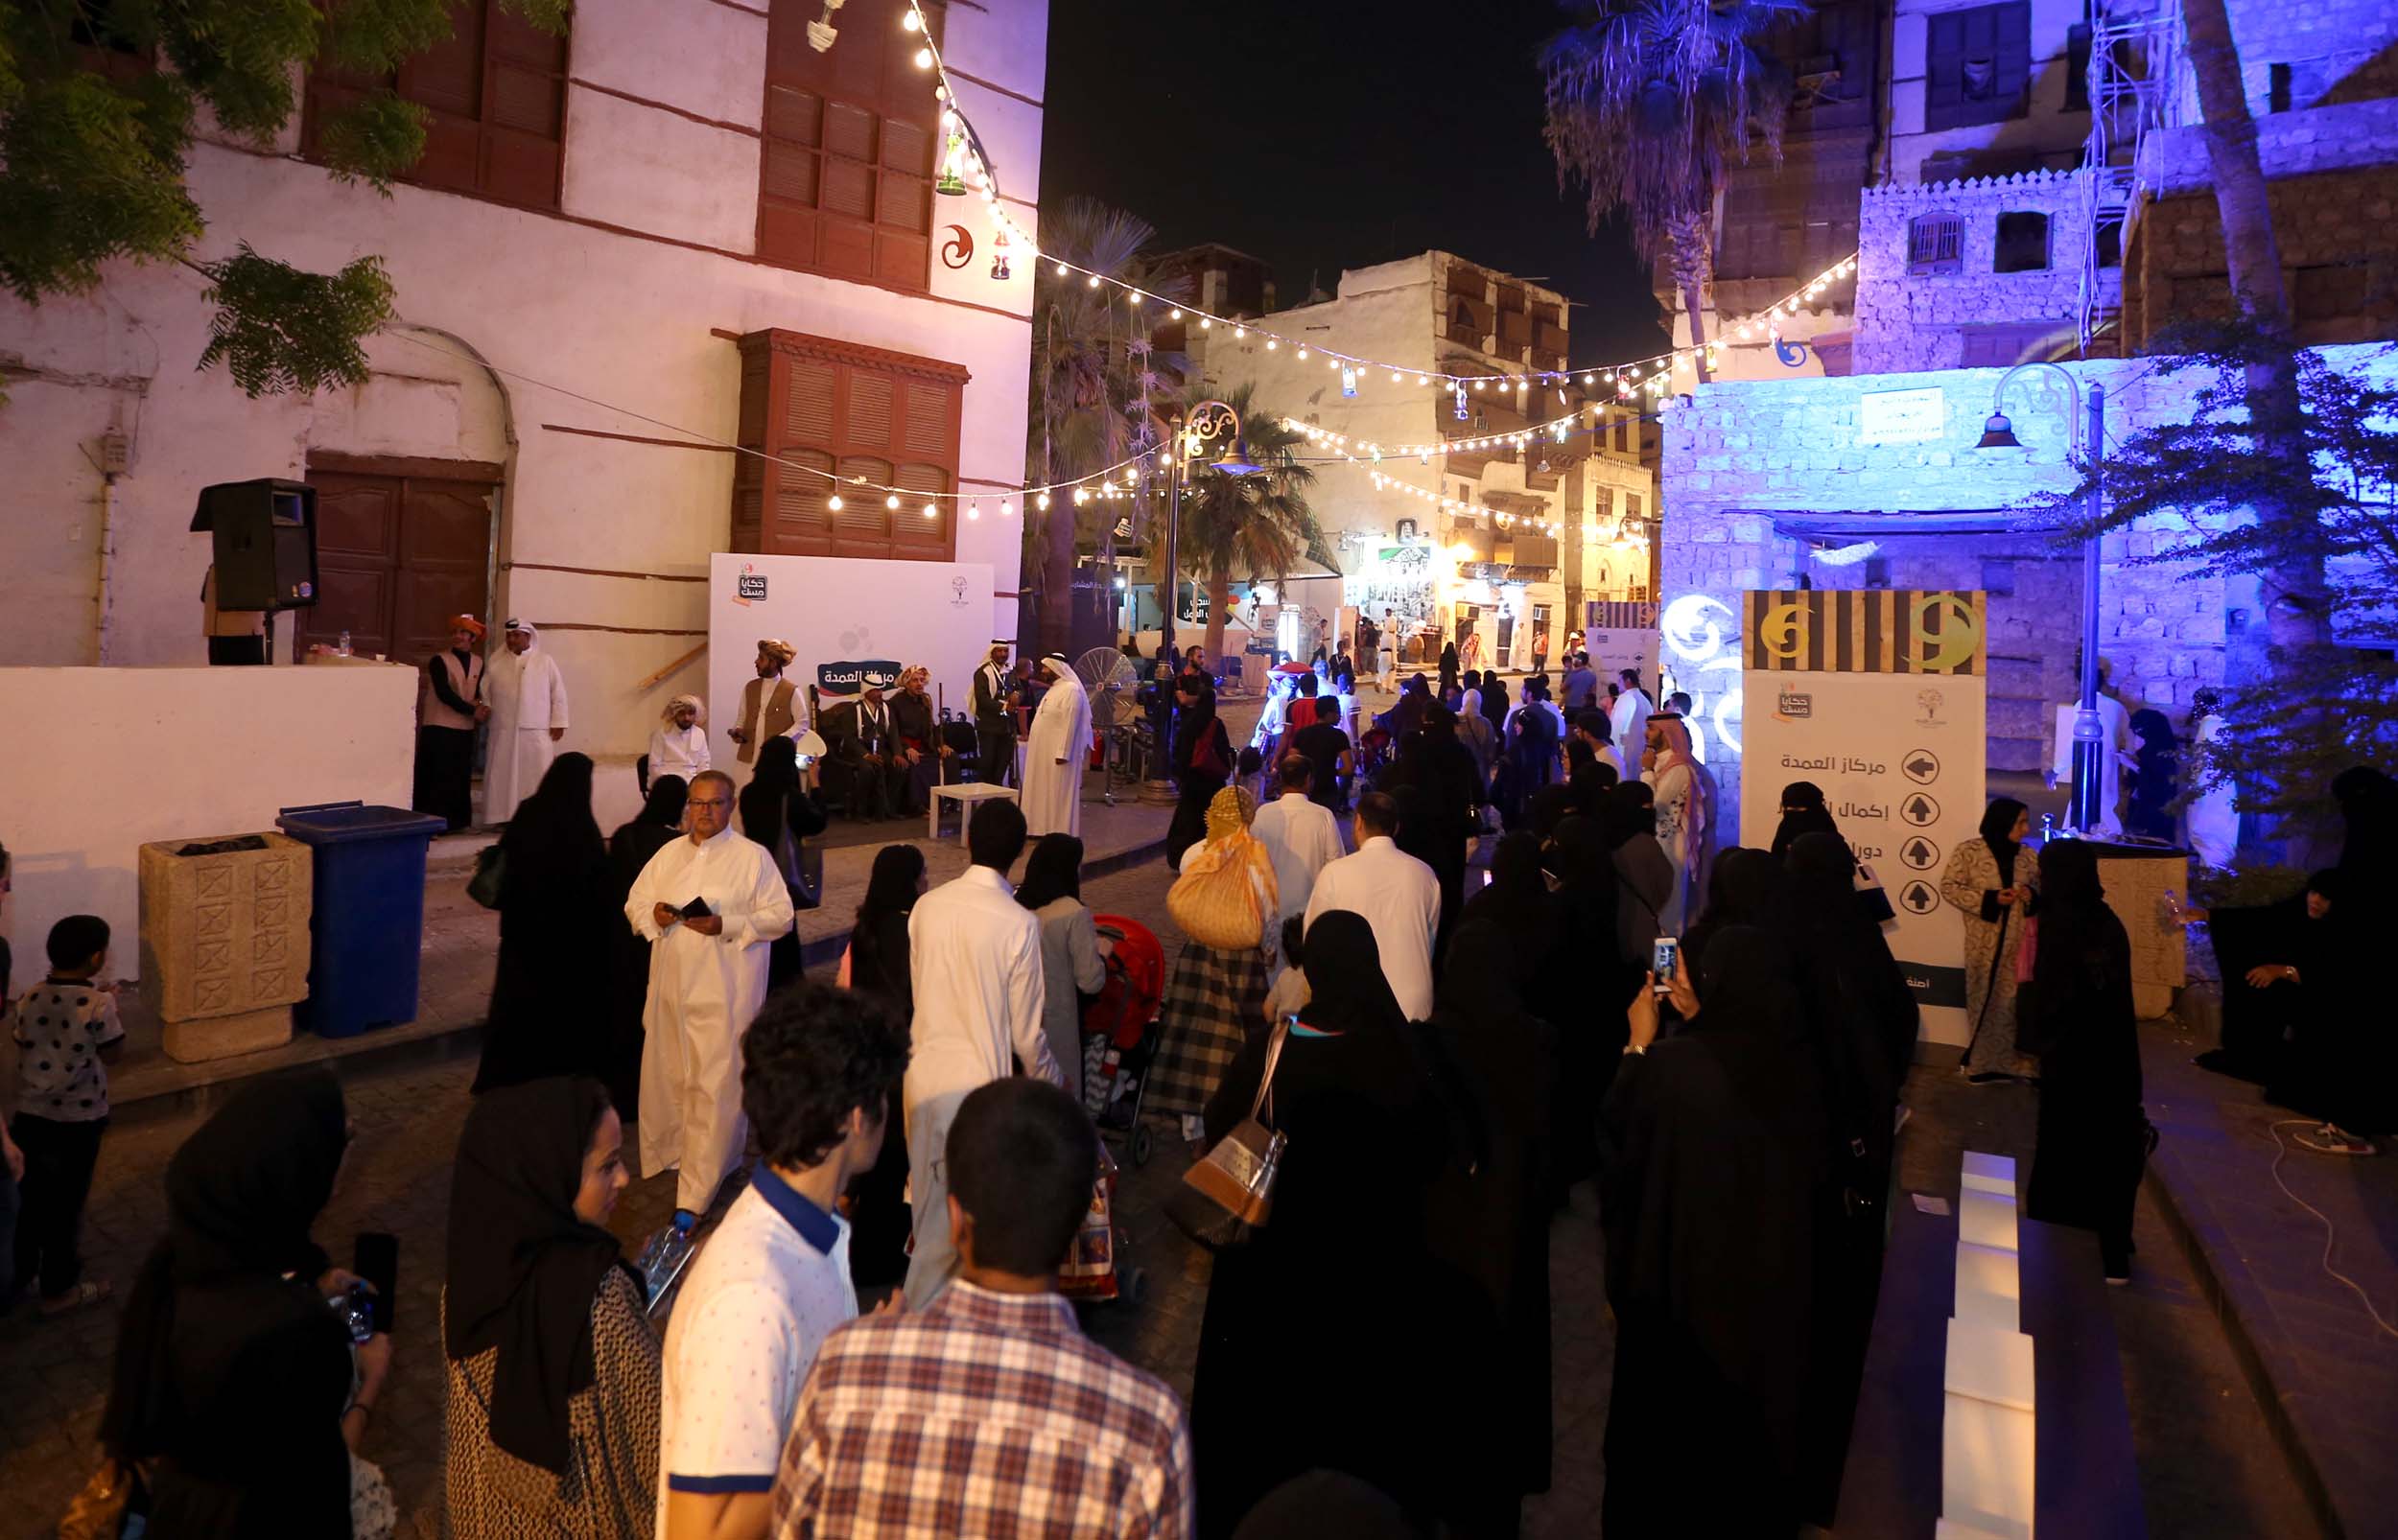 أكثر من 21 ألف زائر لـ”حكايا مسك” في جدة التاريخية خلال يومين